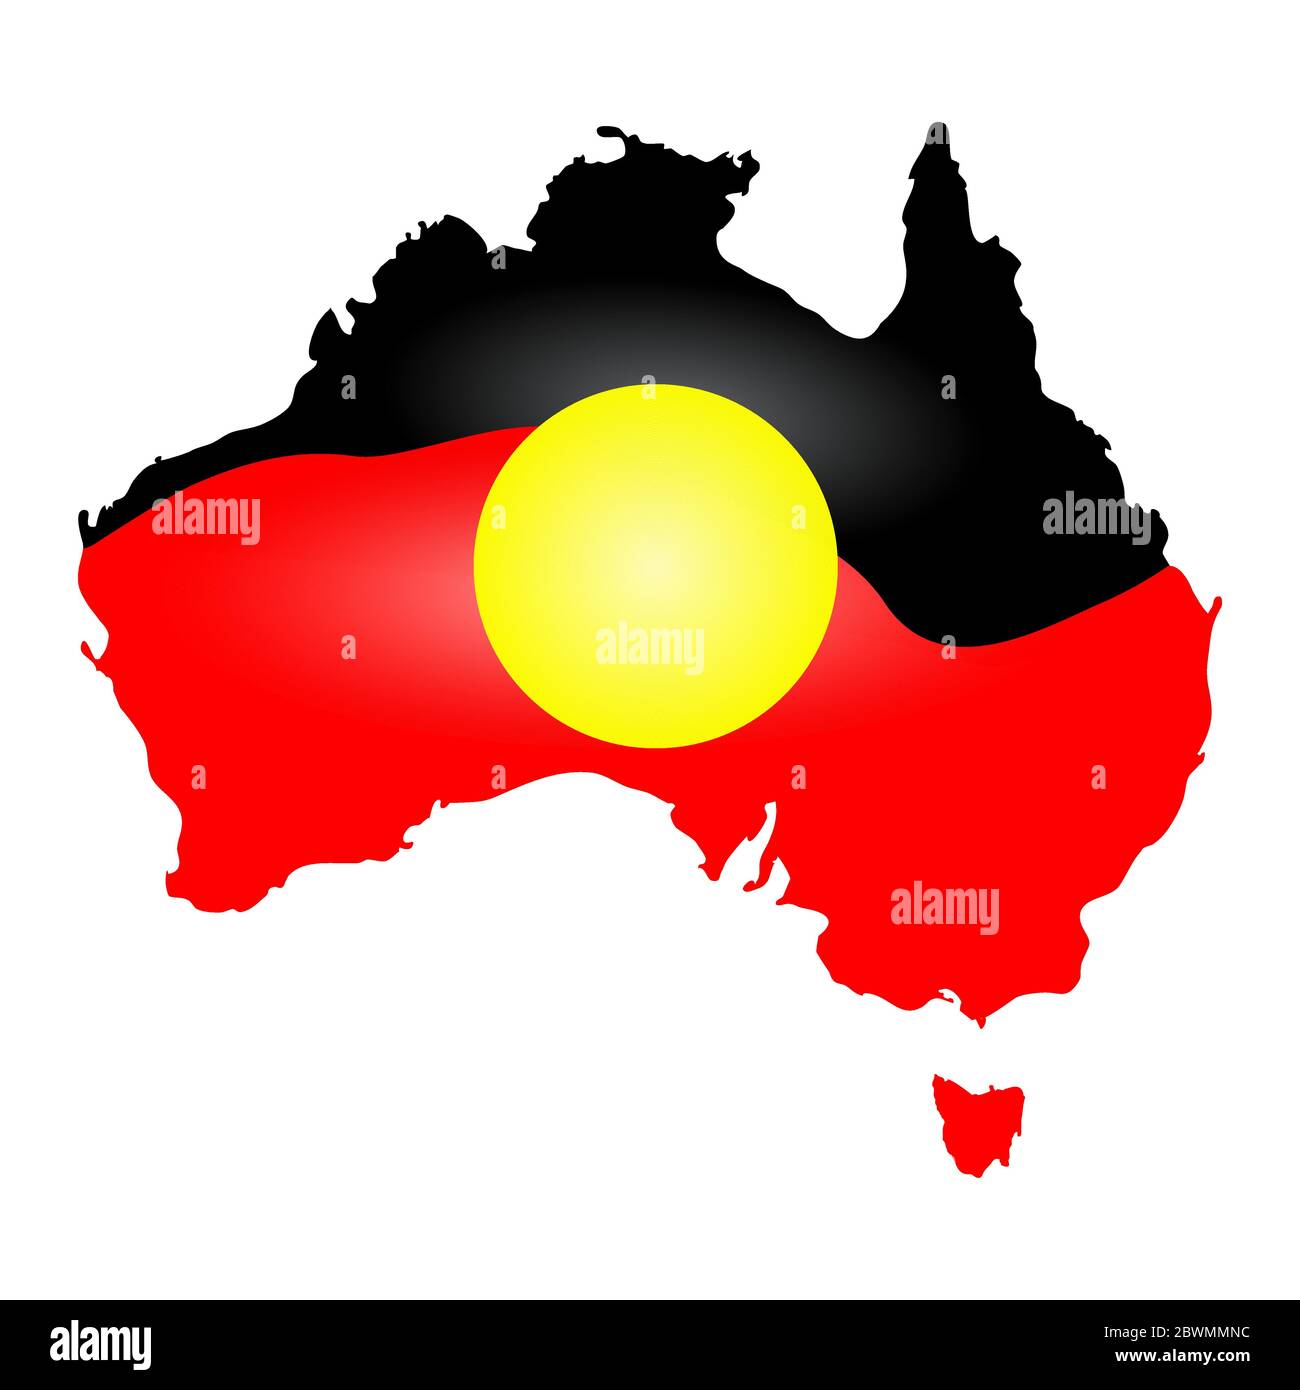 Australie drapeau aborigène, carte, continent isolé sur fond blanc. Australie Journée des Autochtones. Semaine Naidoc. Jour de réconciliation. Illustration vectorielle Illustration de Vecteur